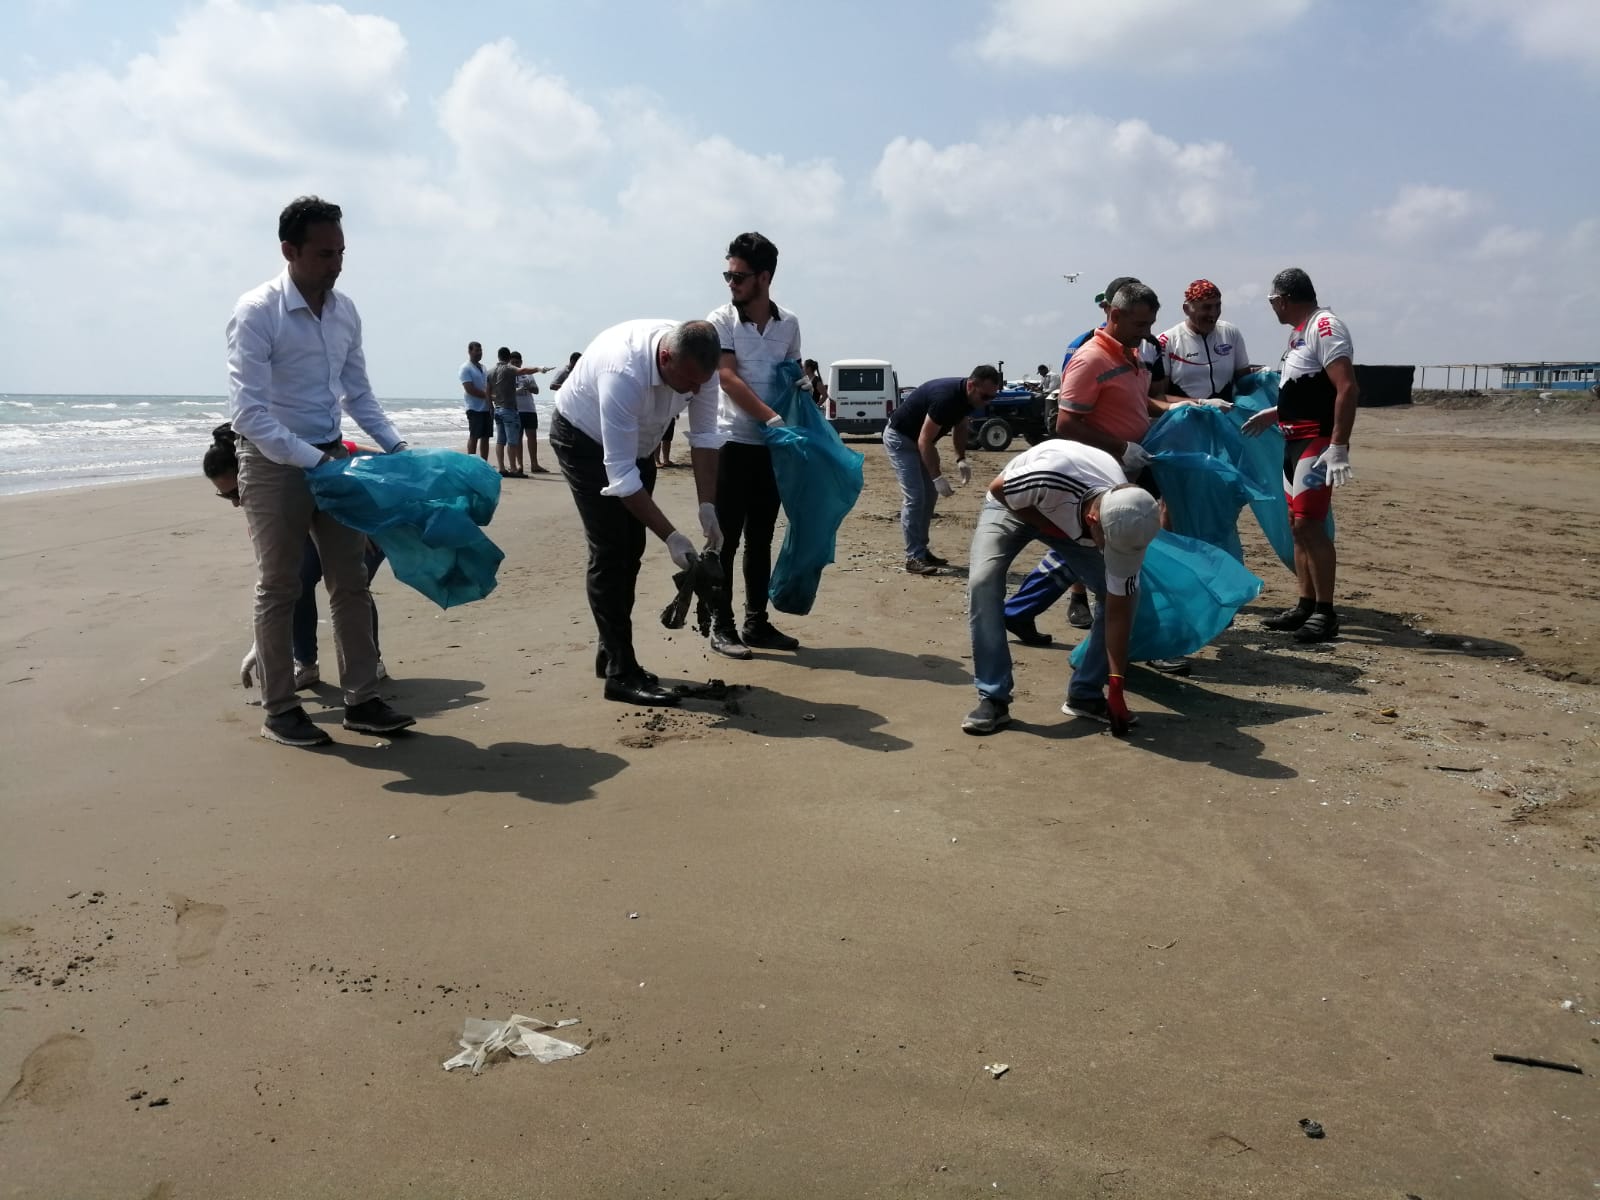 Karataş Belediyesi Sahil Temizliği Etkinliği ile plastik kirliliğine dikkat çekti. 